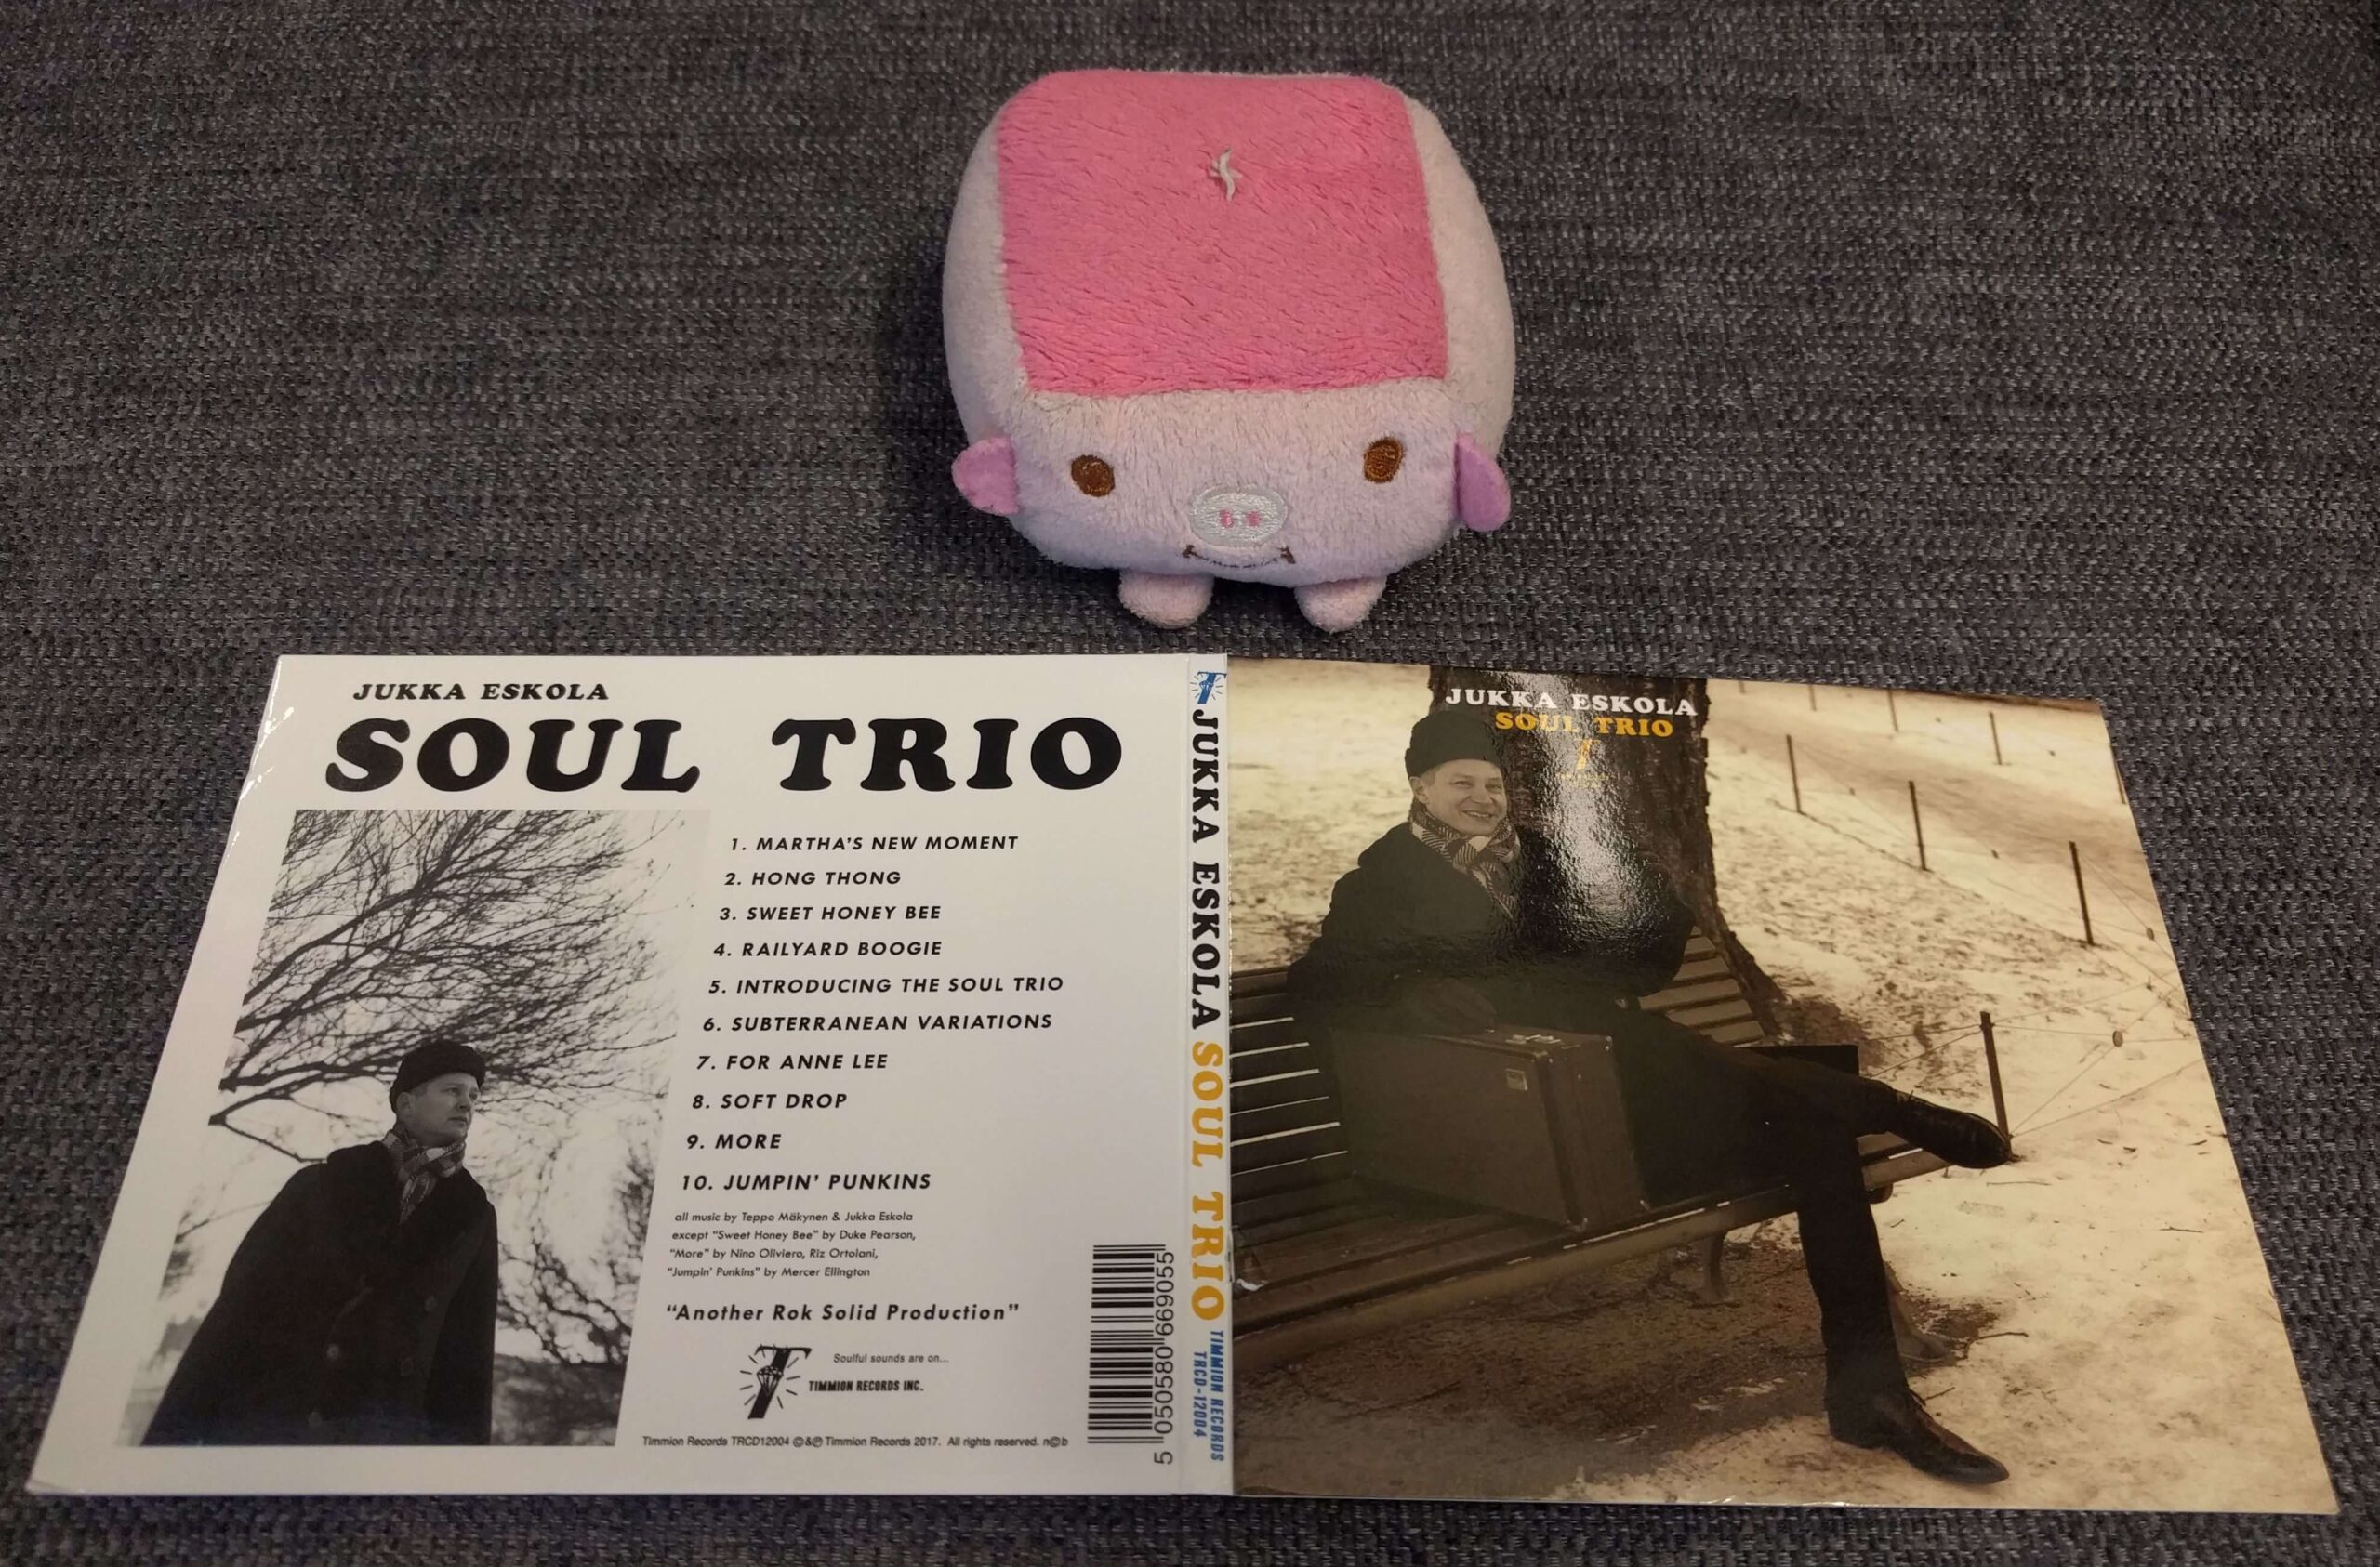 Jukka Eskola Soul Trio – Jukka Eskola Soul Trio